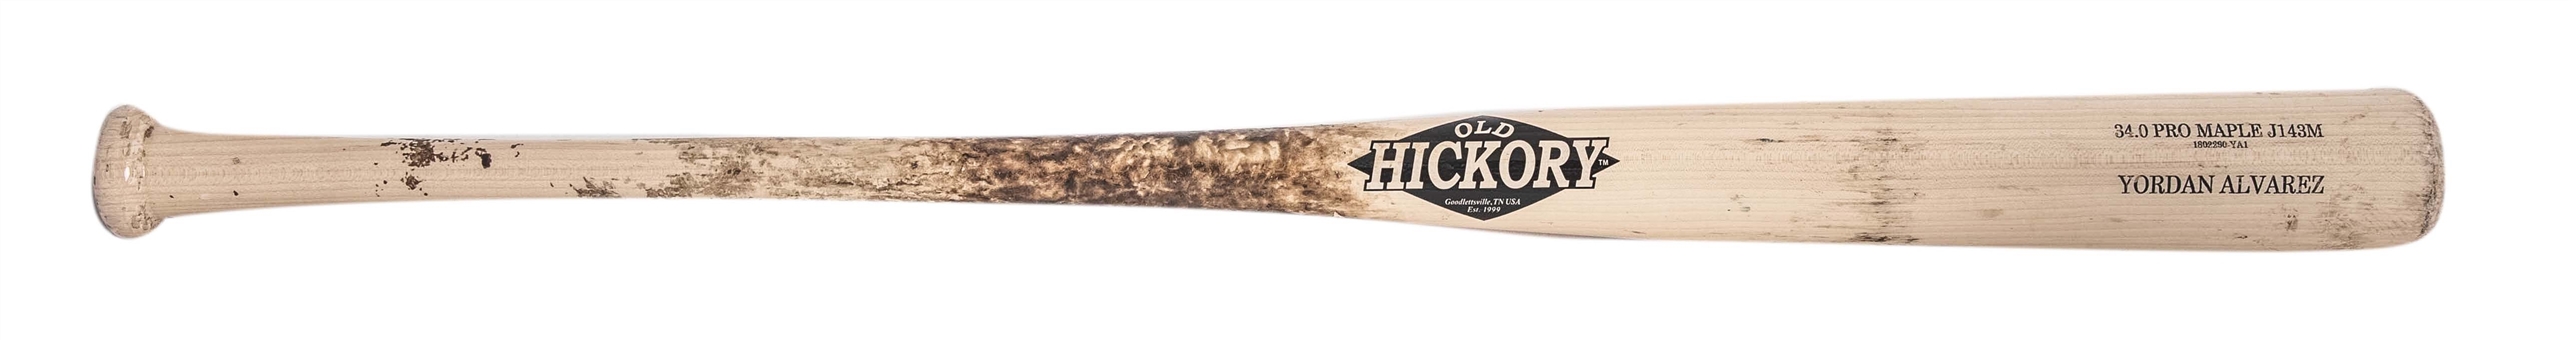 2018 Yordan Alvarez Game Used Old Hickory J143M Model Bat (PSA/DNA)